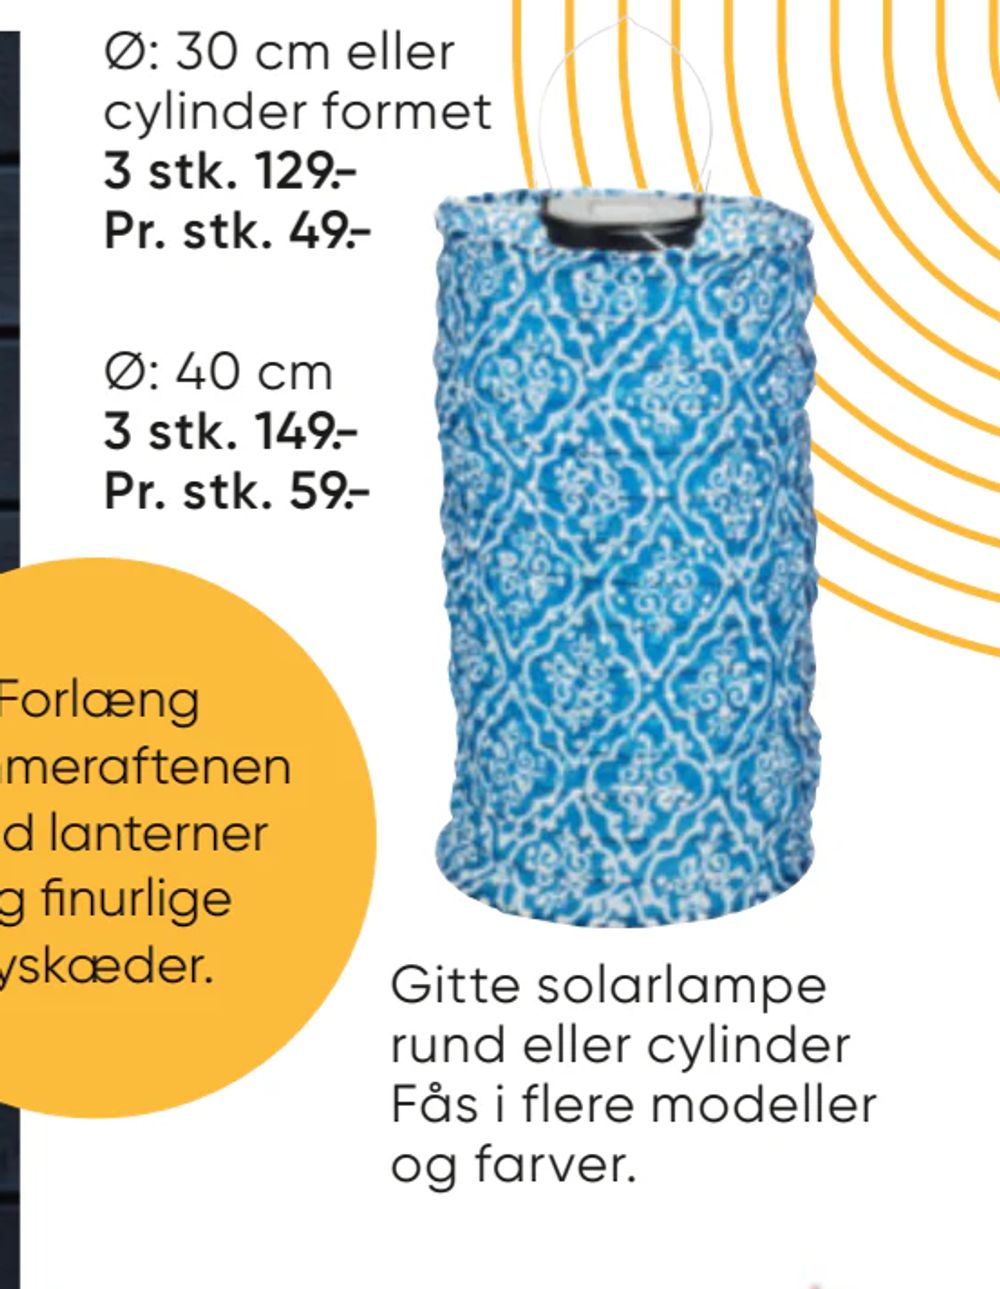 Tilbud på Gitte solarlampe rund eller cylinder fra Bilka til 129 kr.